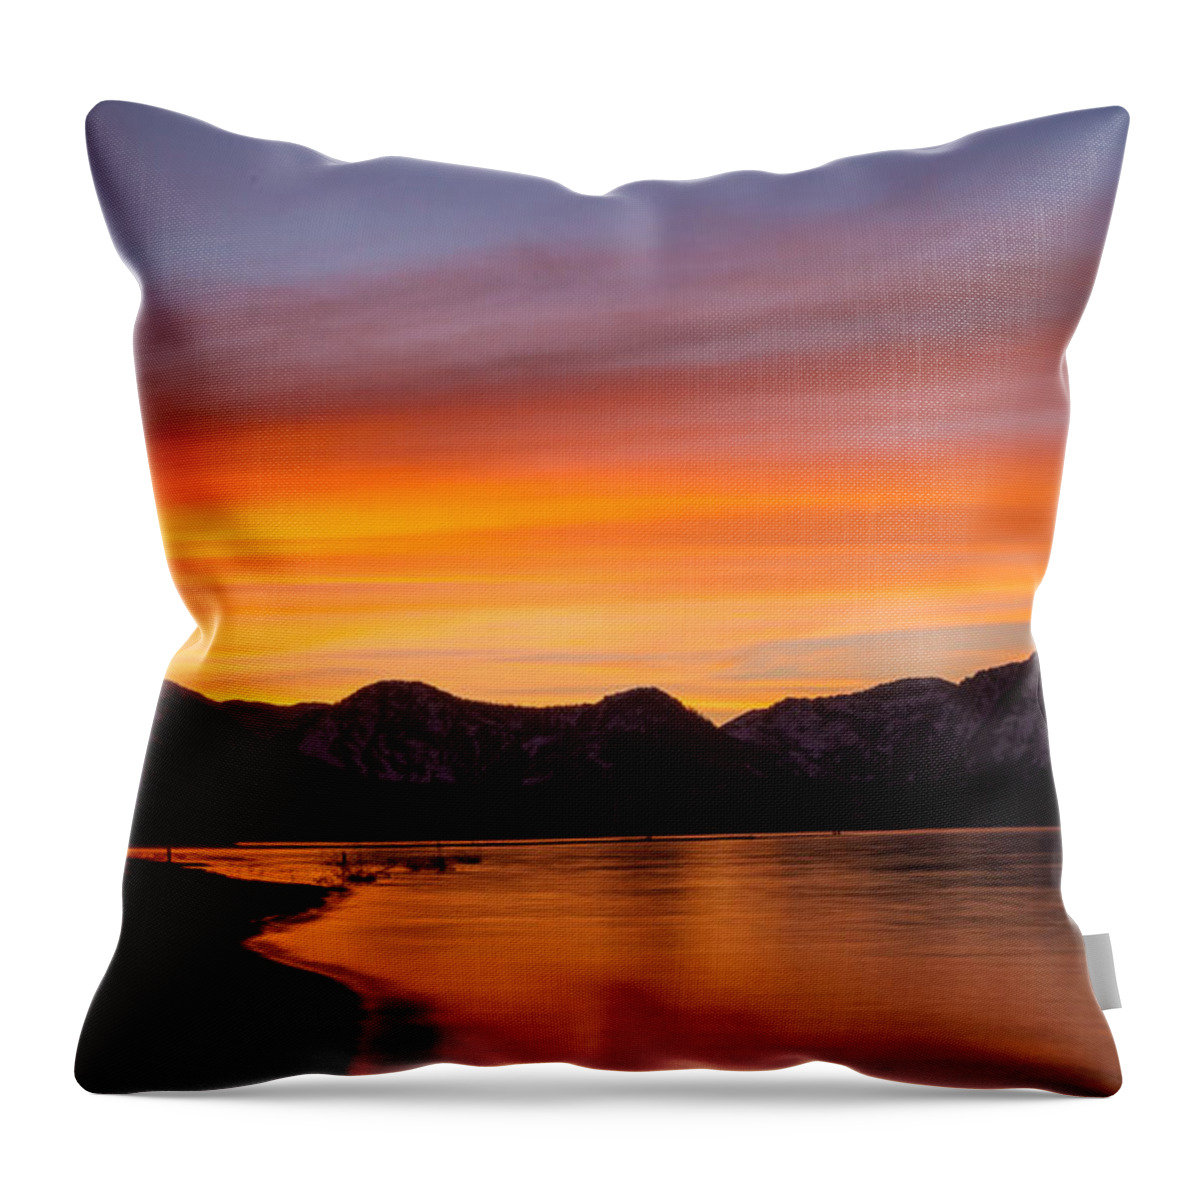 Hidden Beach Sunset Throw Pillow featuring the photograph Hidden Beach Sunset by Mitch Shindelbower